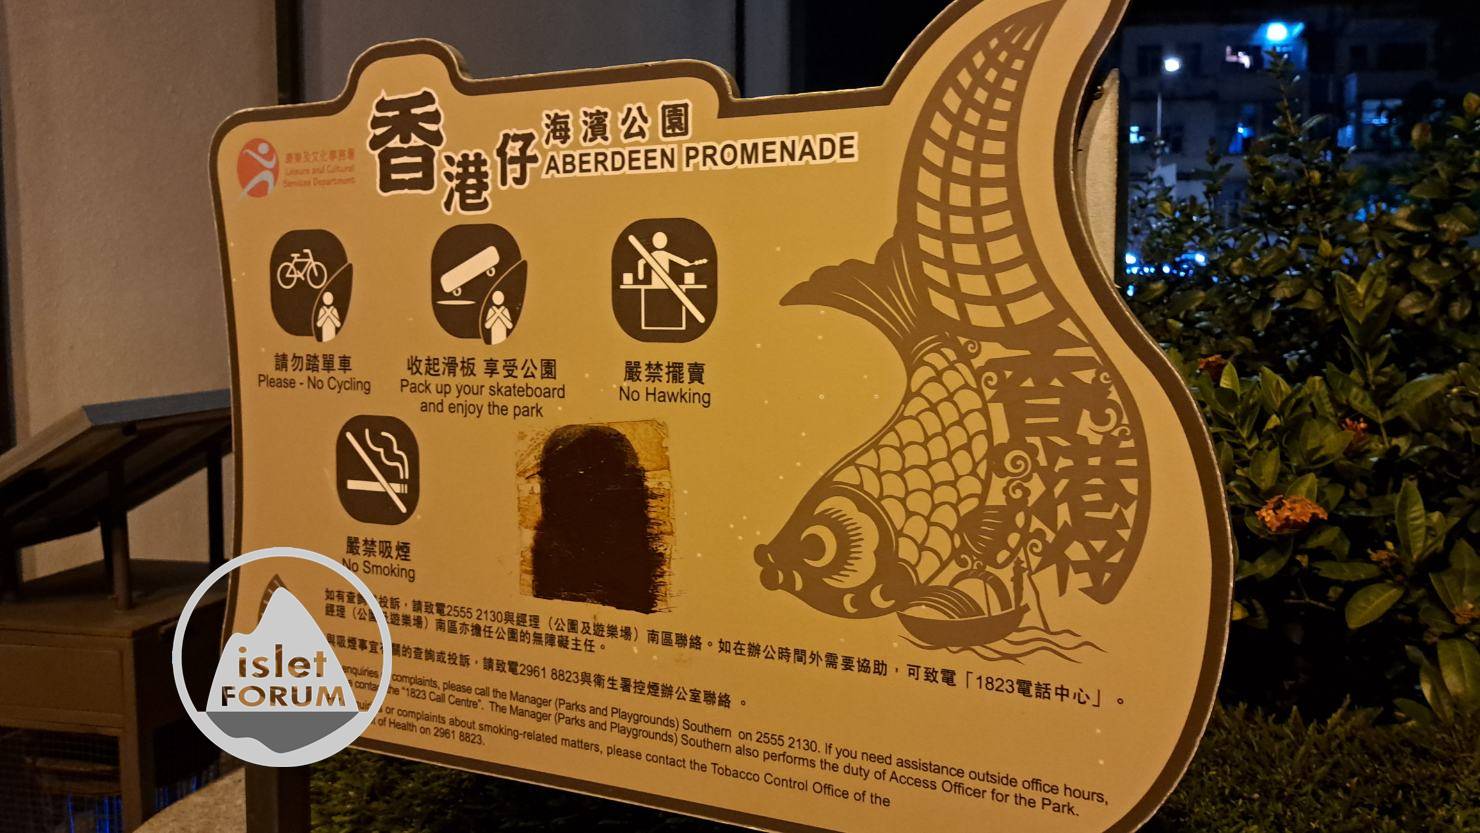 香港仔海濱公園aberdeen promenade (11).jpg